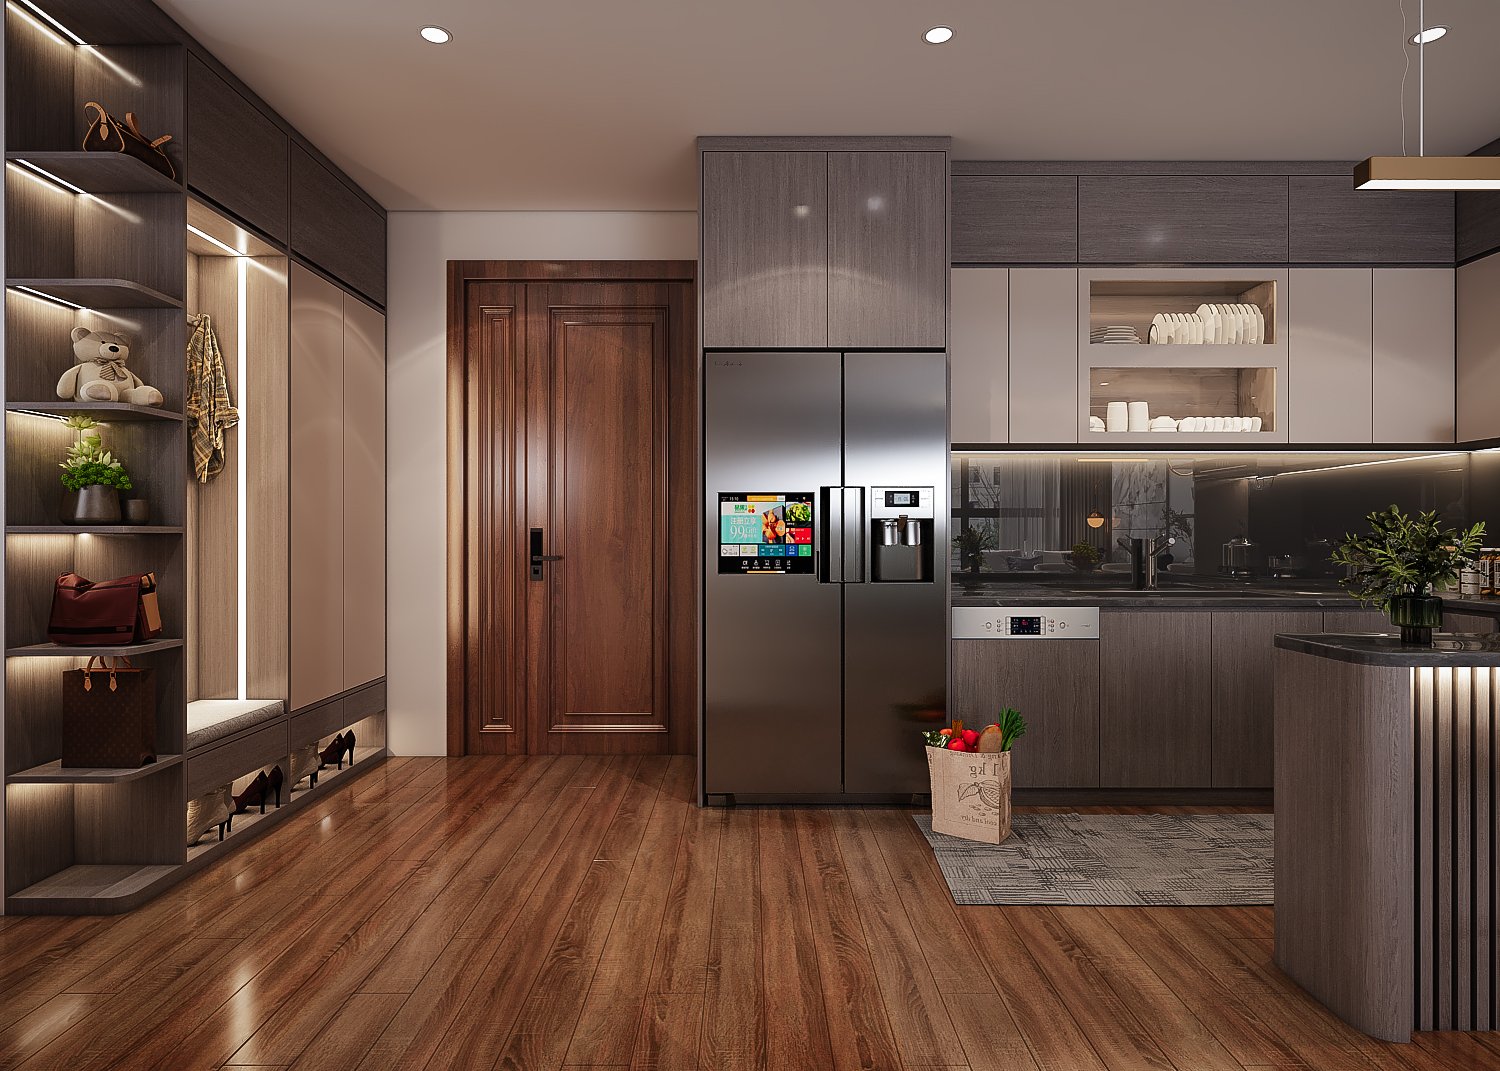 Căn hộ có không gian mở với thiết kế liên thông giữa phòng khách và bếp